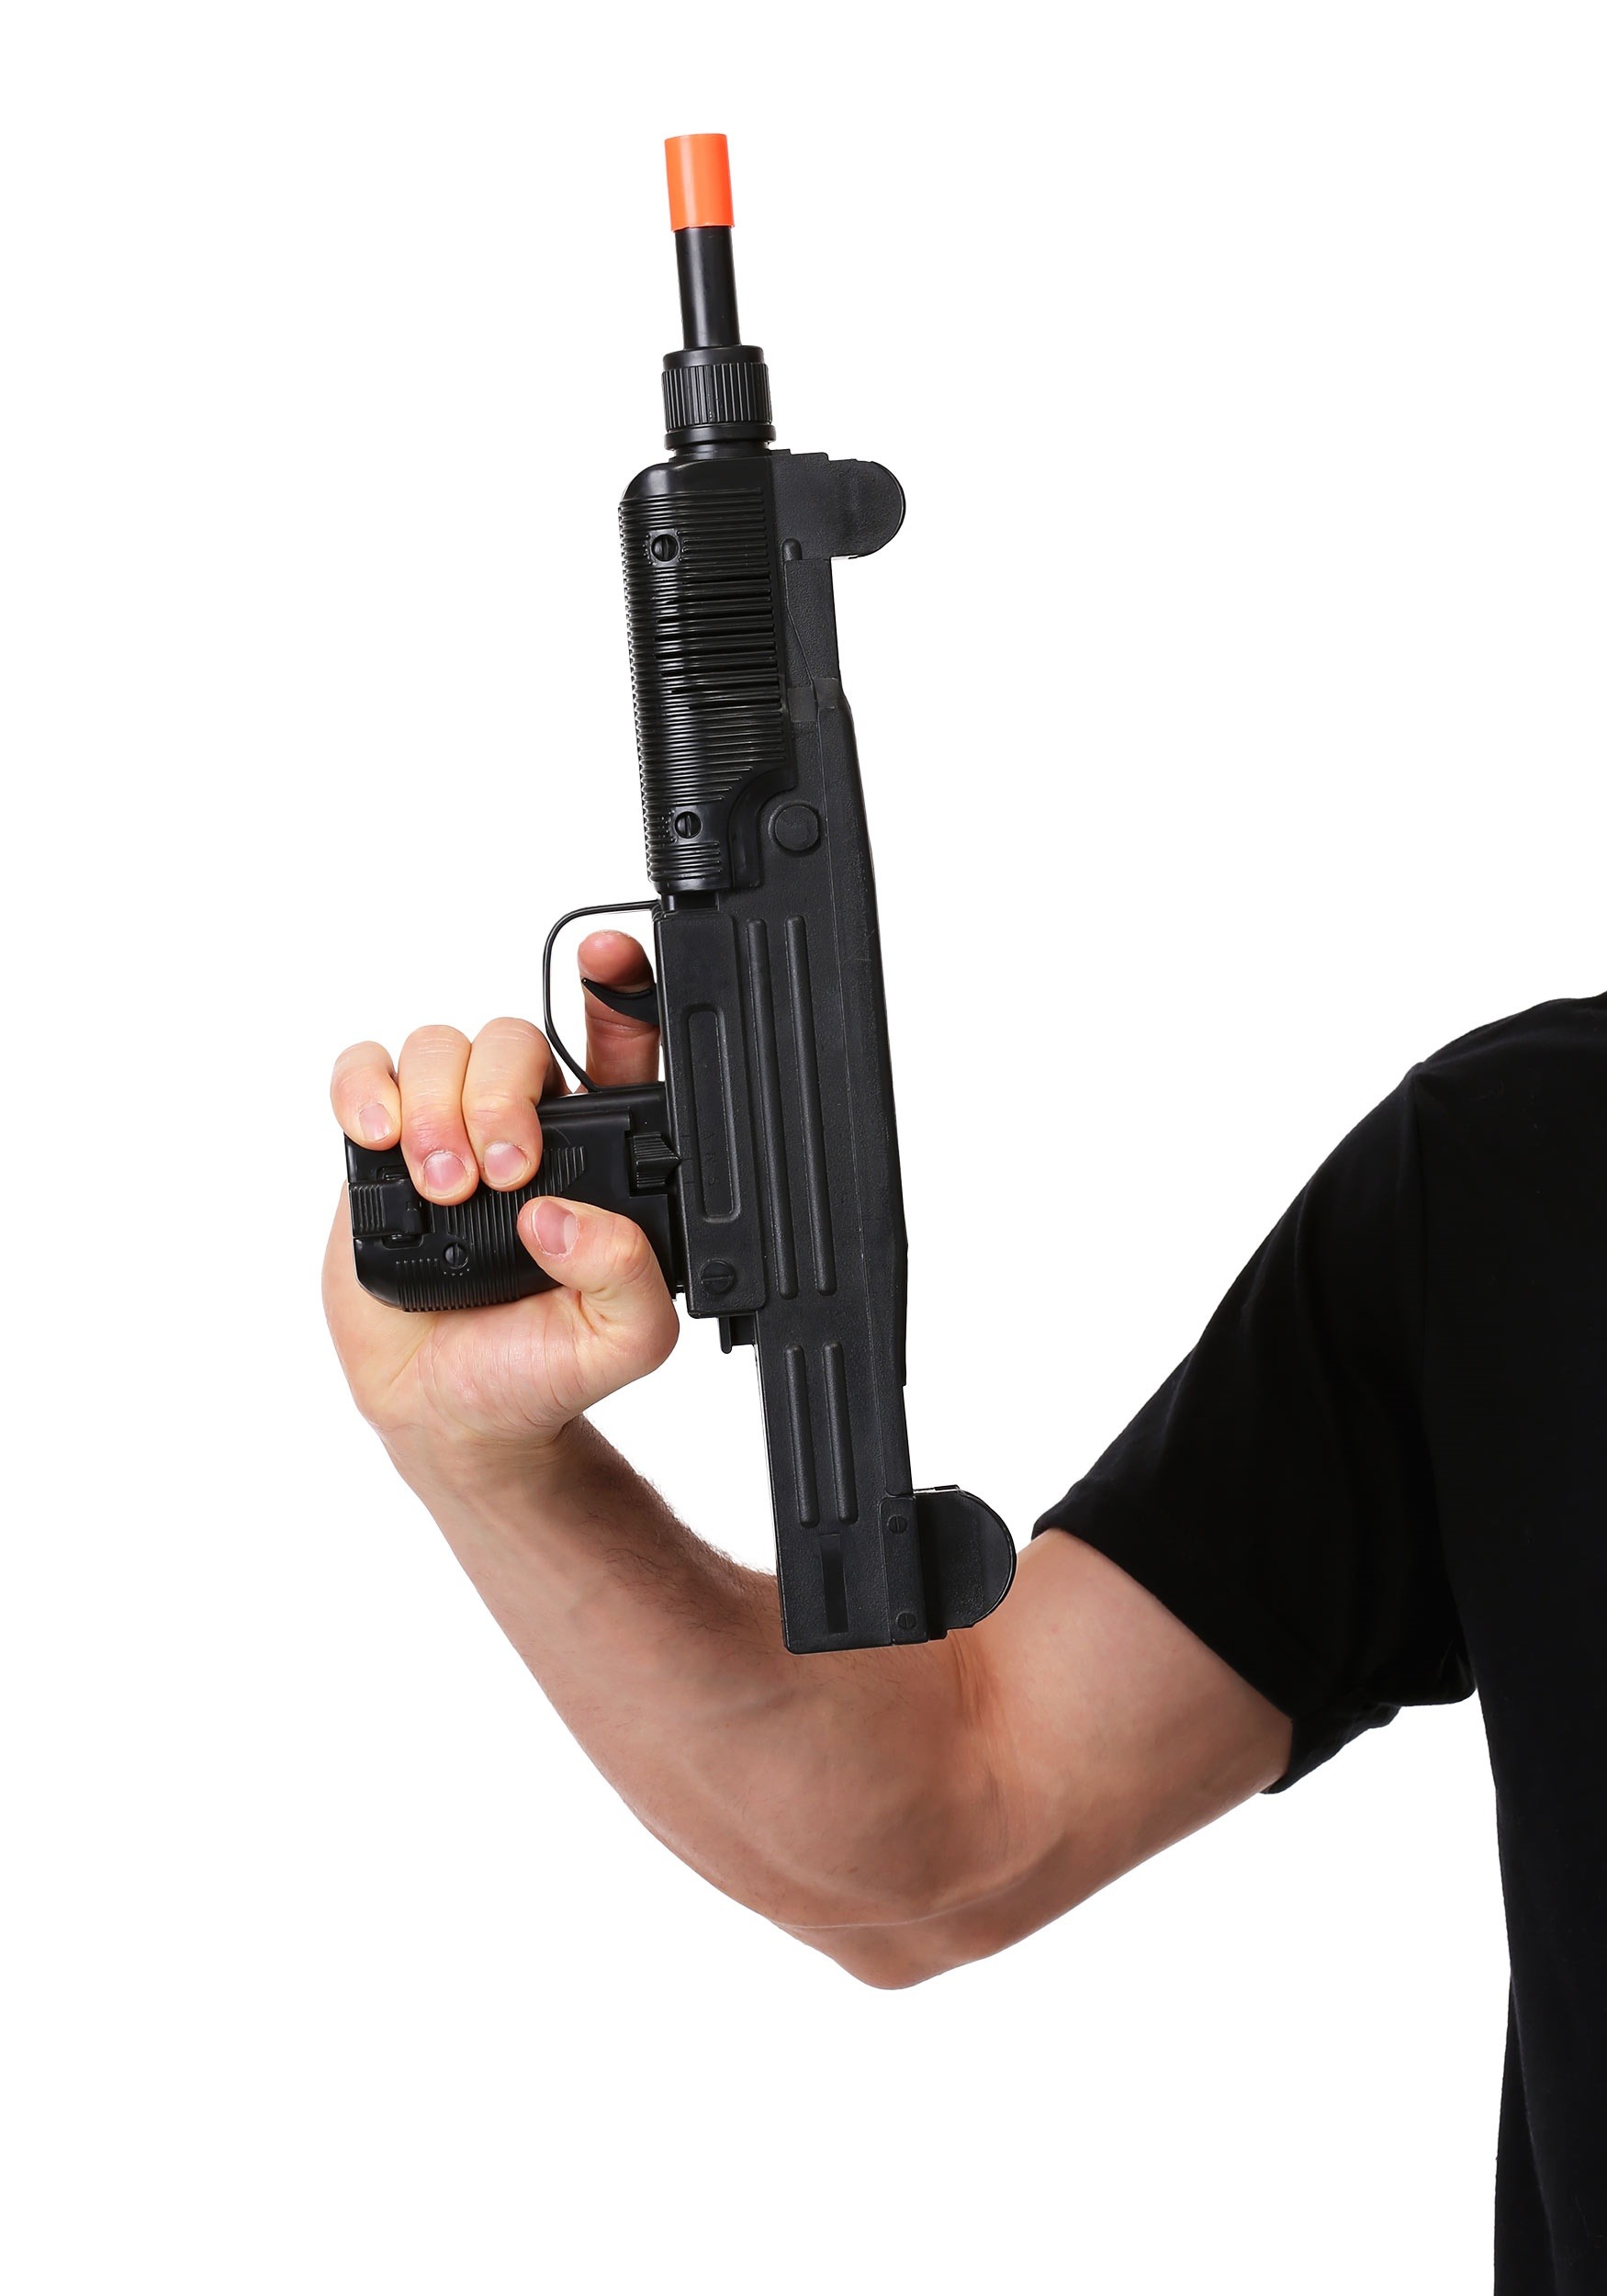 mini uzi 9mm machine pistol